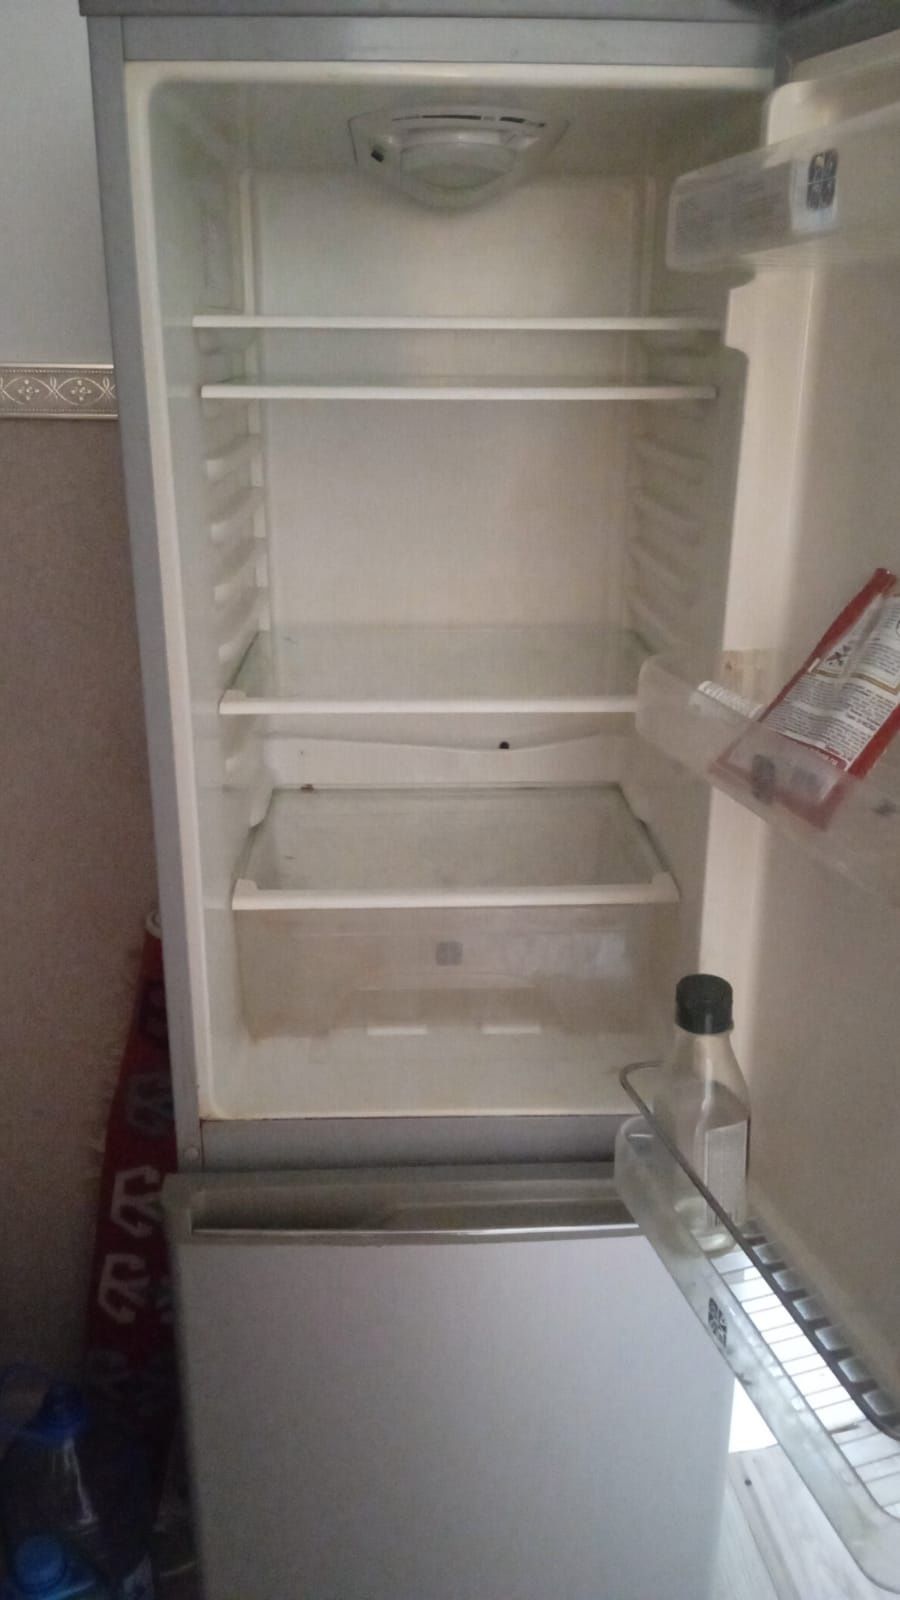 Холодильник  самсунг  цена 20000.  Фрион  куию керек  истеп тур